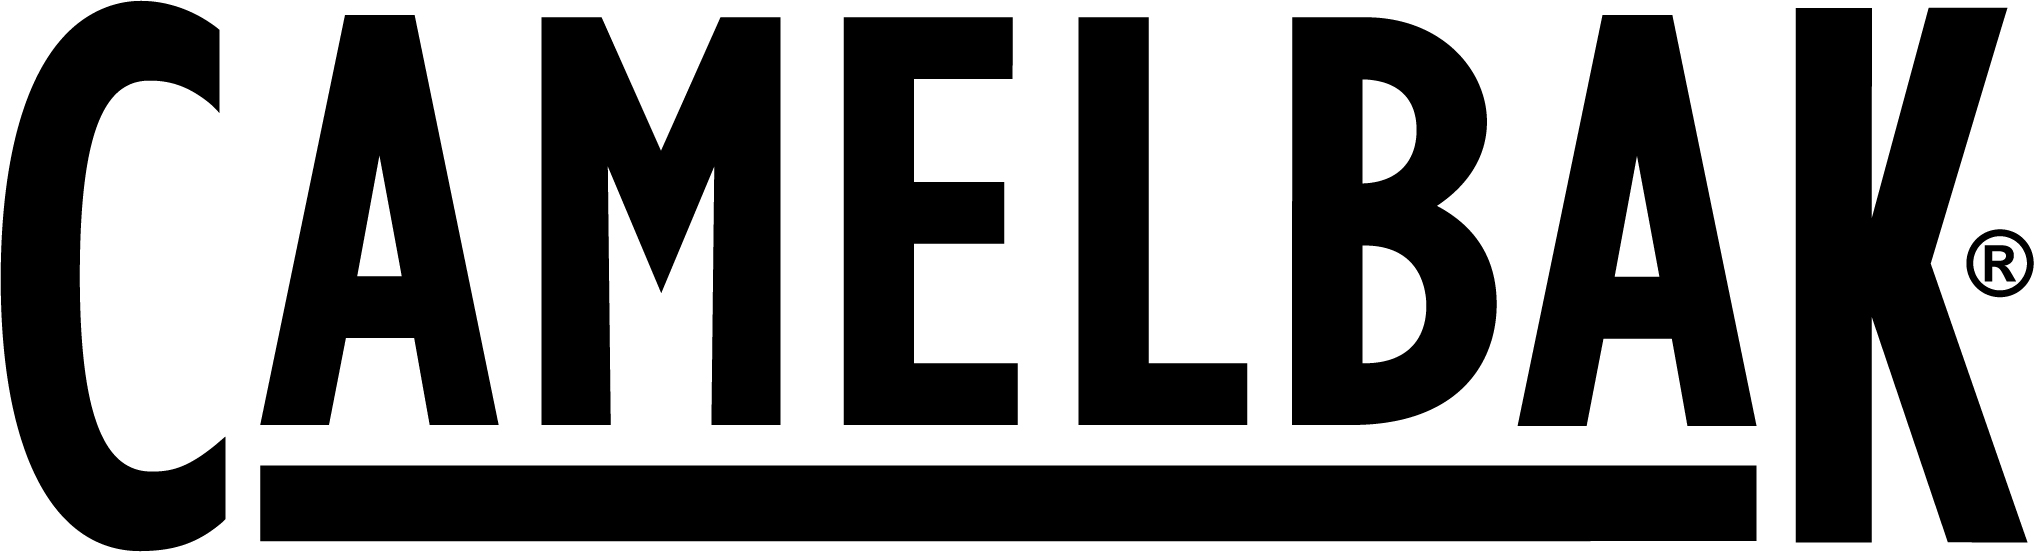 Camelbak_logo